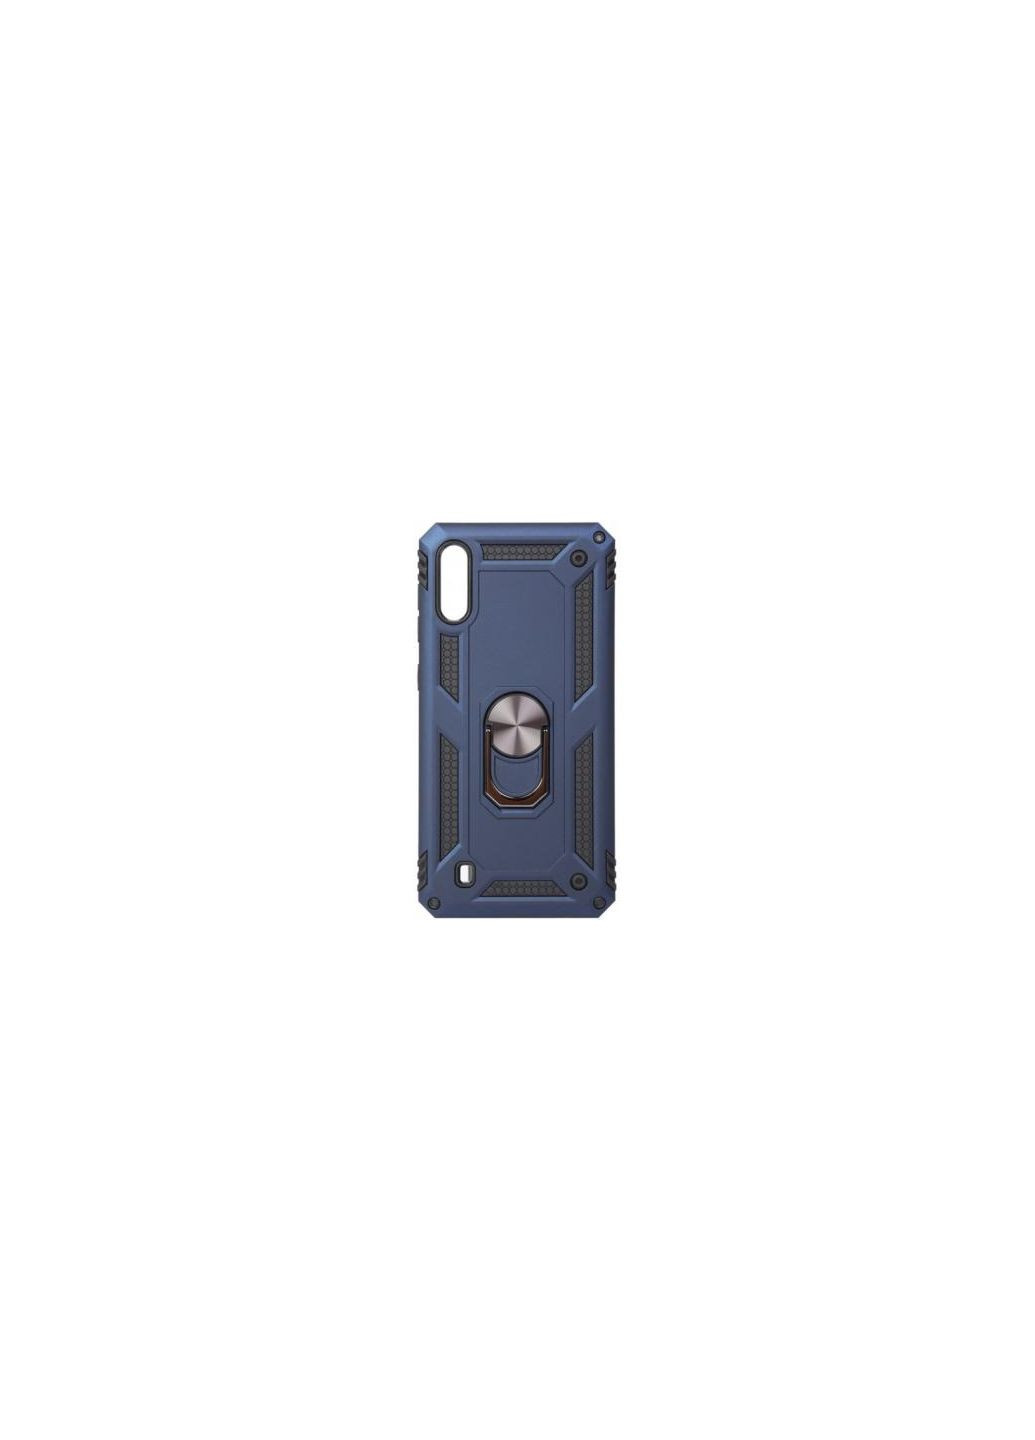 Чехол для мобильного телефона Military Galaxy M10 SMM105 Blue (704061) BeCover military galaxy m10 sm-m105 blue (275100839)